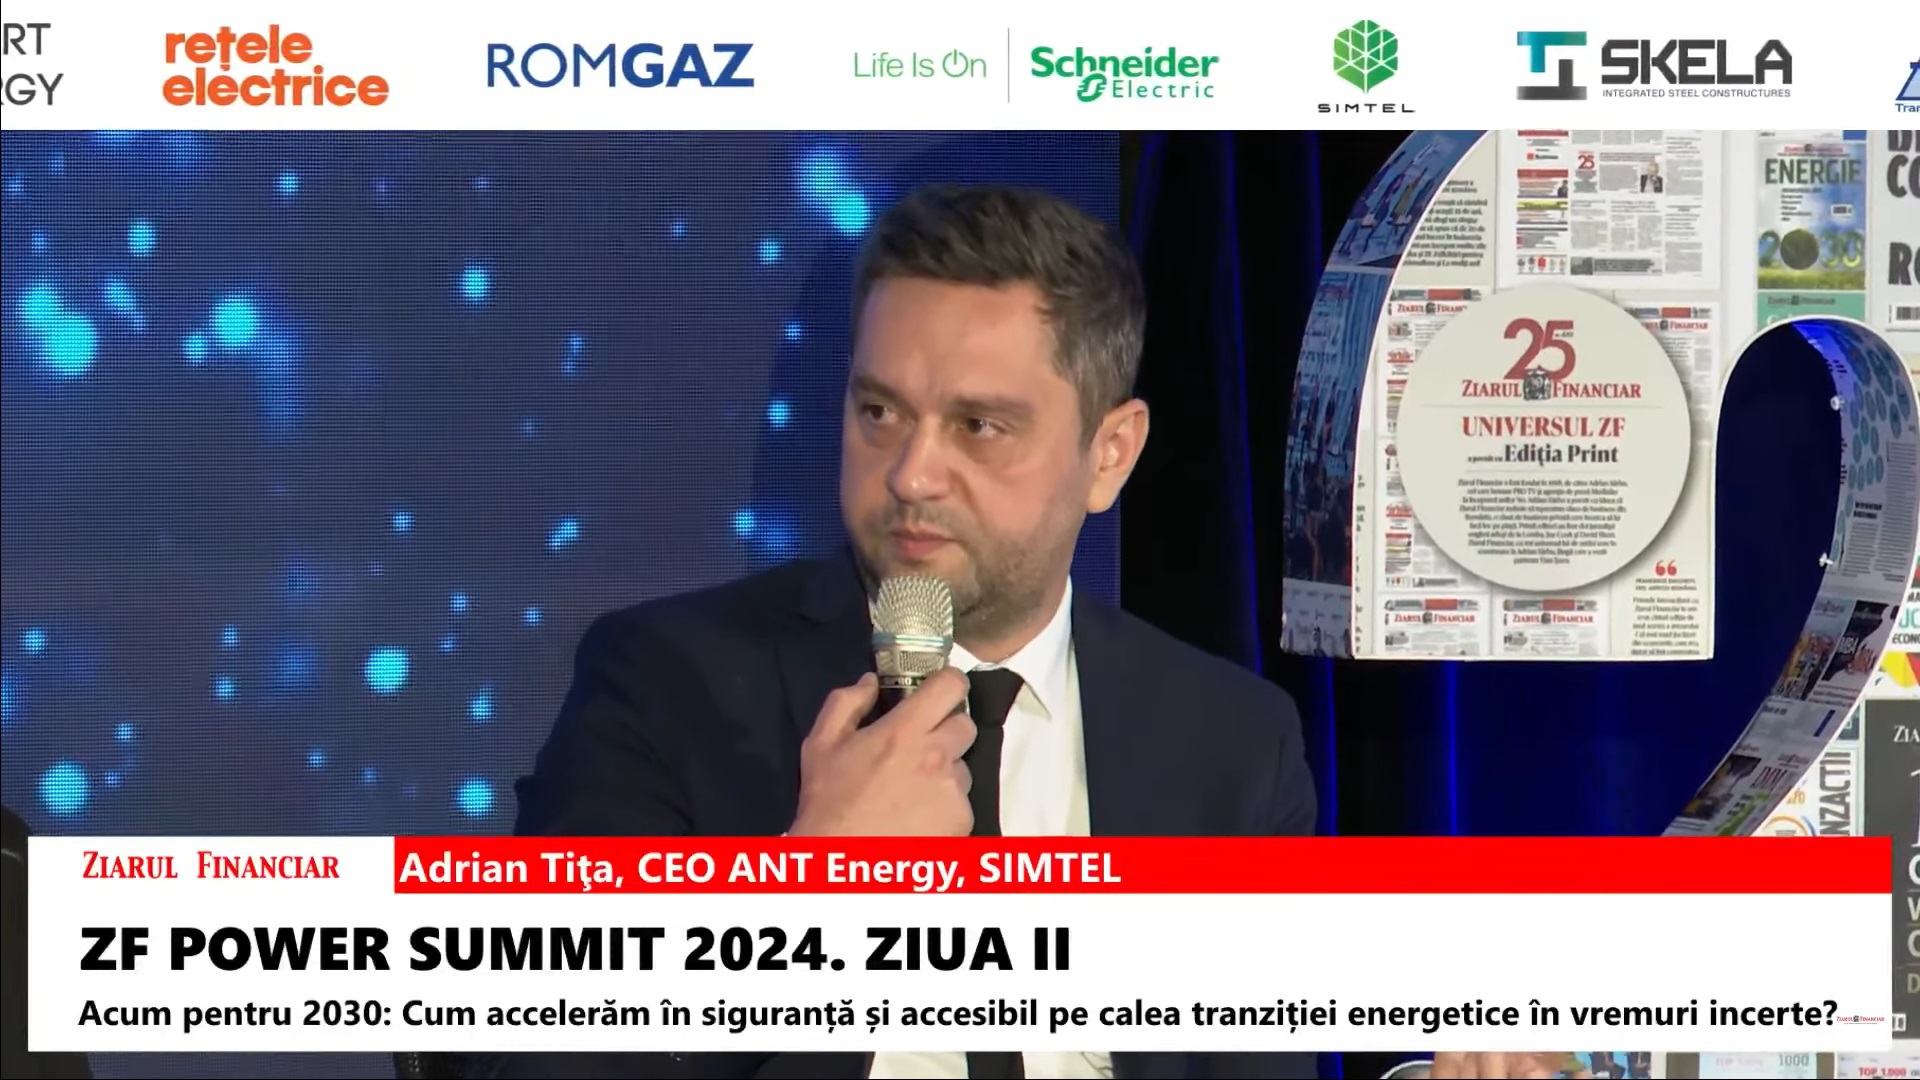 Adrian Tiţa, CEO ANT Energy, Simtel: Ne aşteptăm ca prosumatorii să ajungă la 2.400-2.500 MW în 2024, de la 1.500 MW la finalul lui 2023